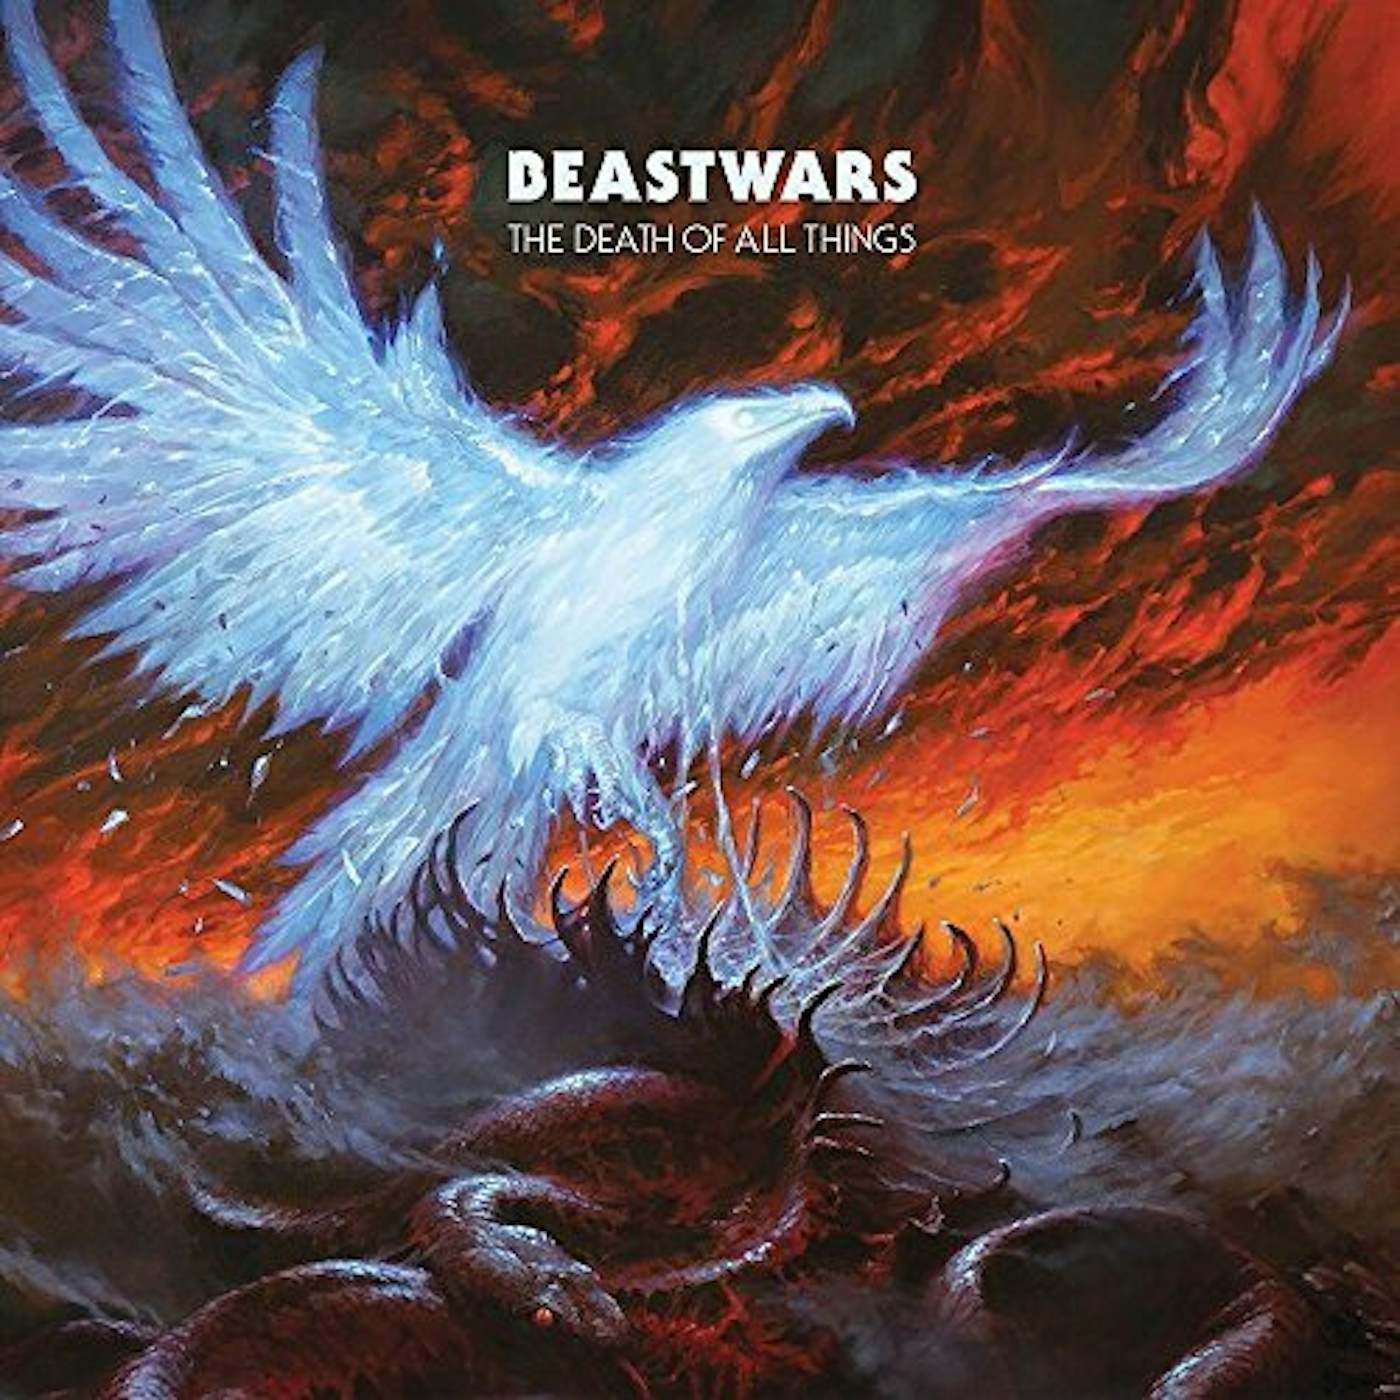 Beastwars DEATH OF ALL THINGS CD